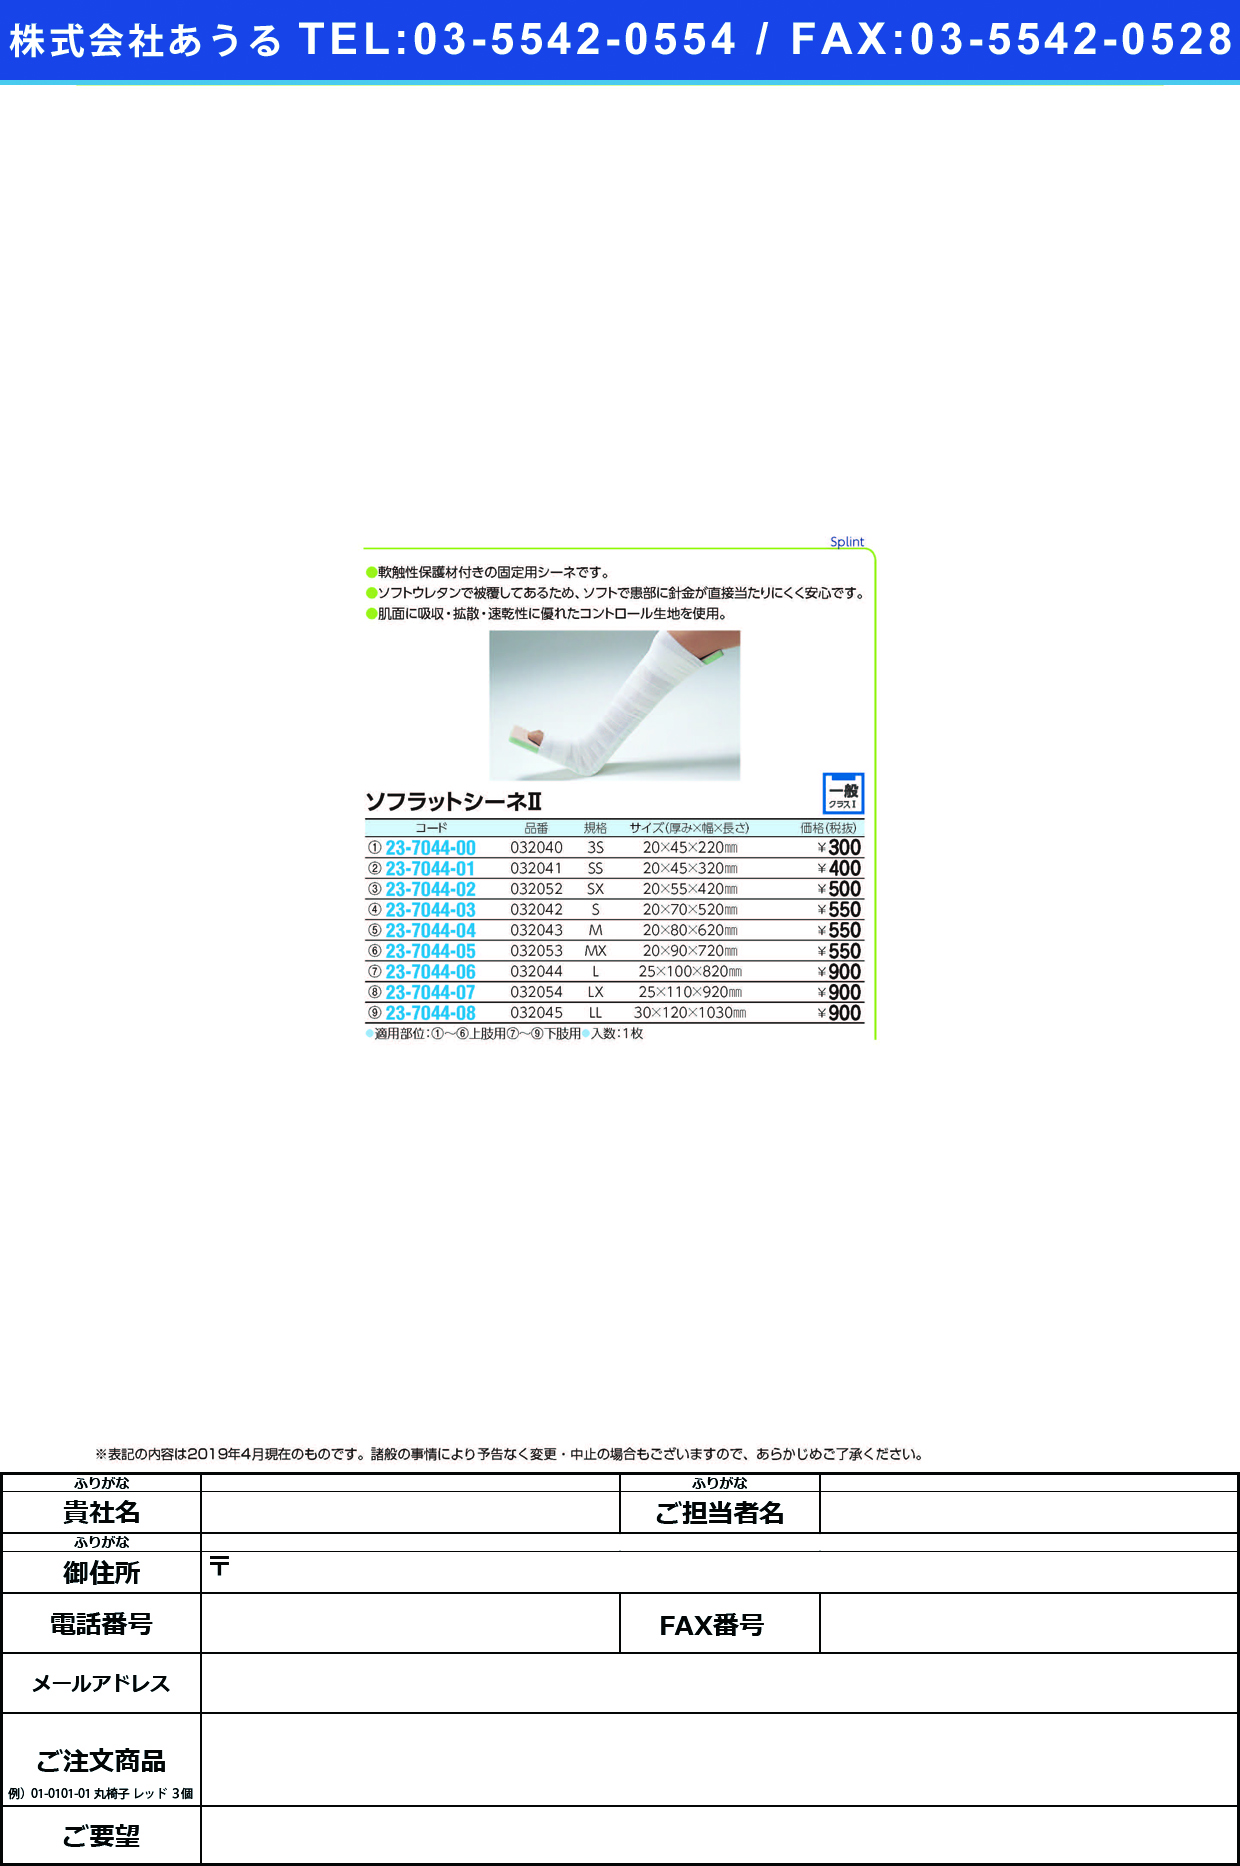 (23-7044-03)ソフラットシーネ?（Ｓ） 032042 ｿﾌﾗｯﾄｼｰﾈ2(S)(竹虎)【1枚単位】【2019年カタログ商品】